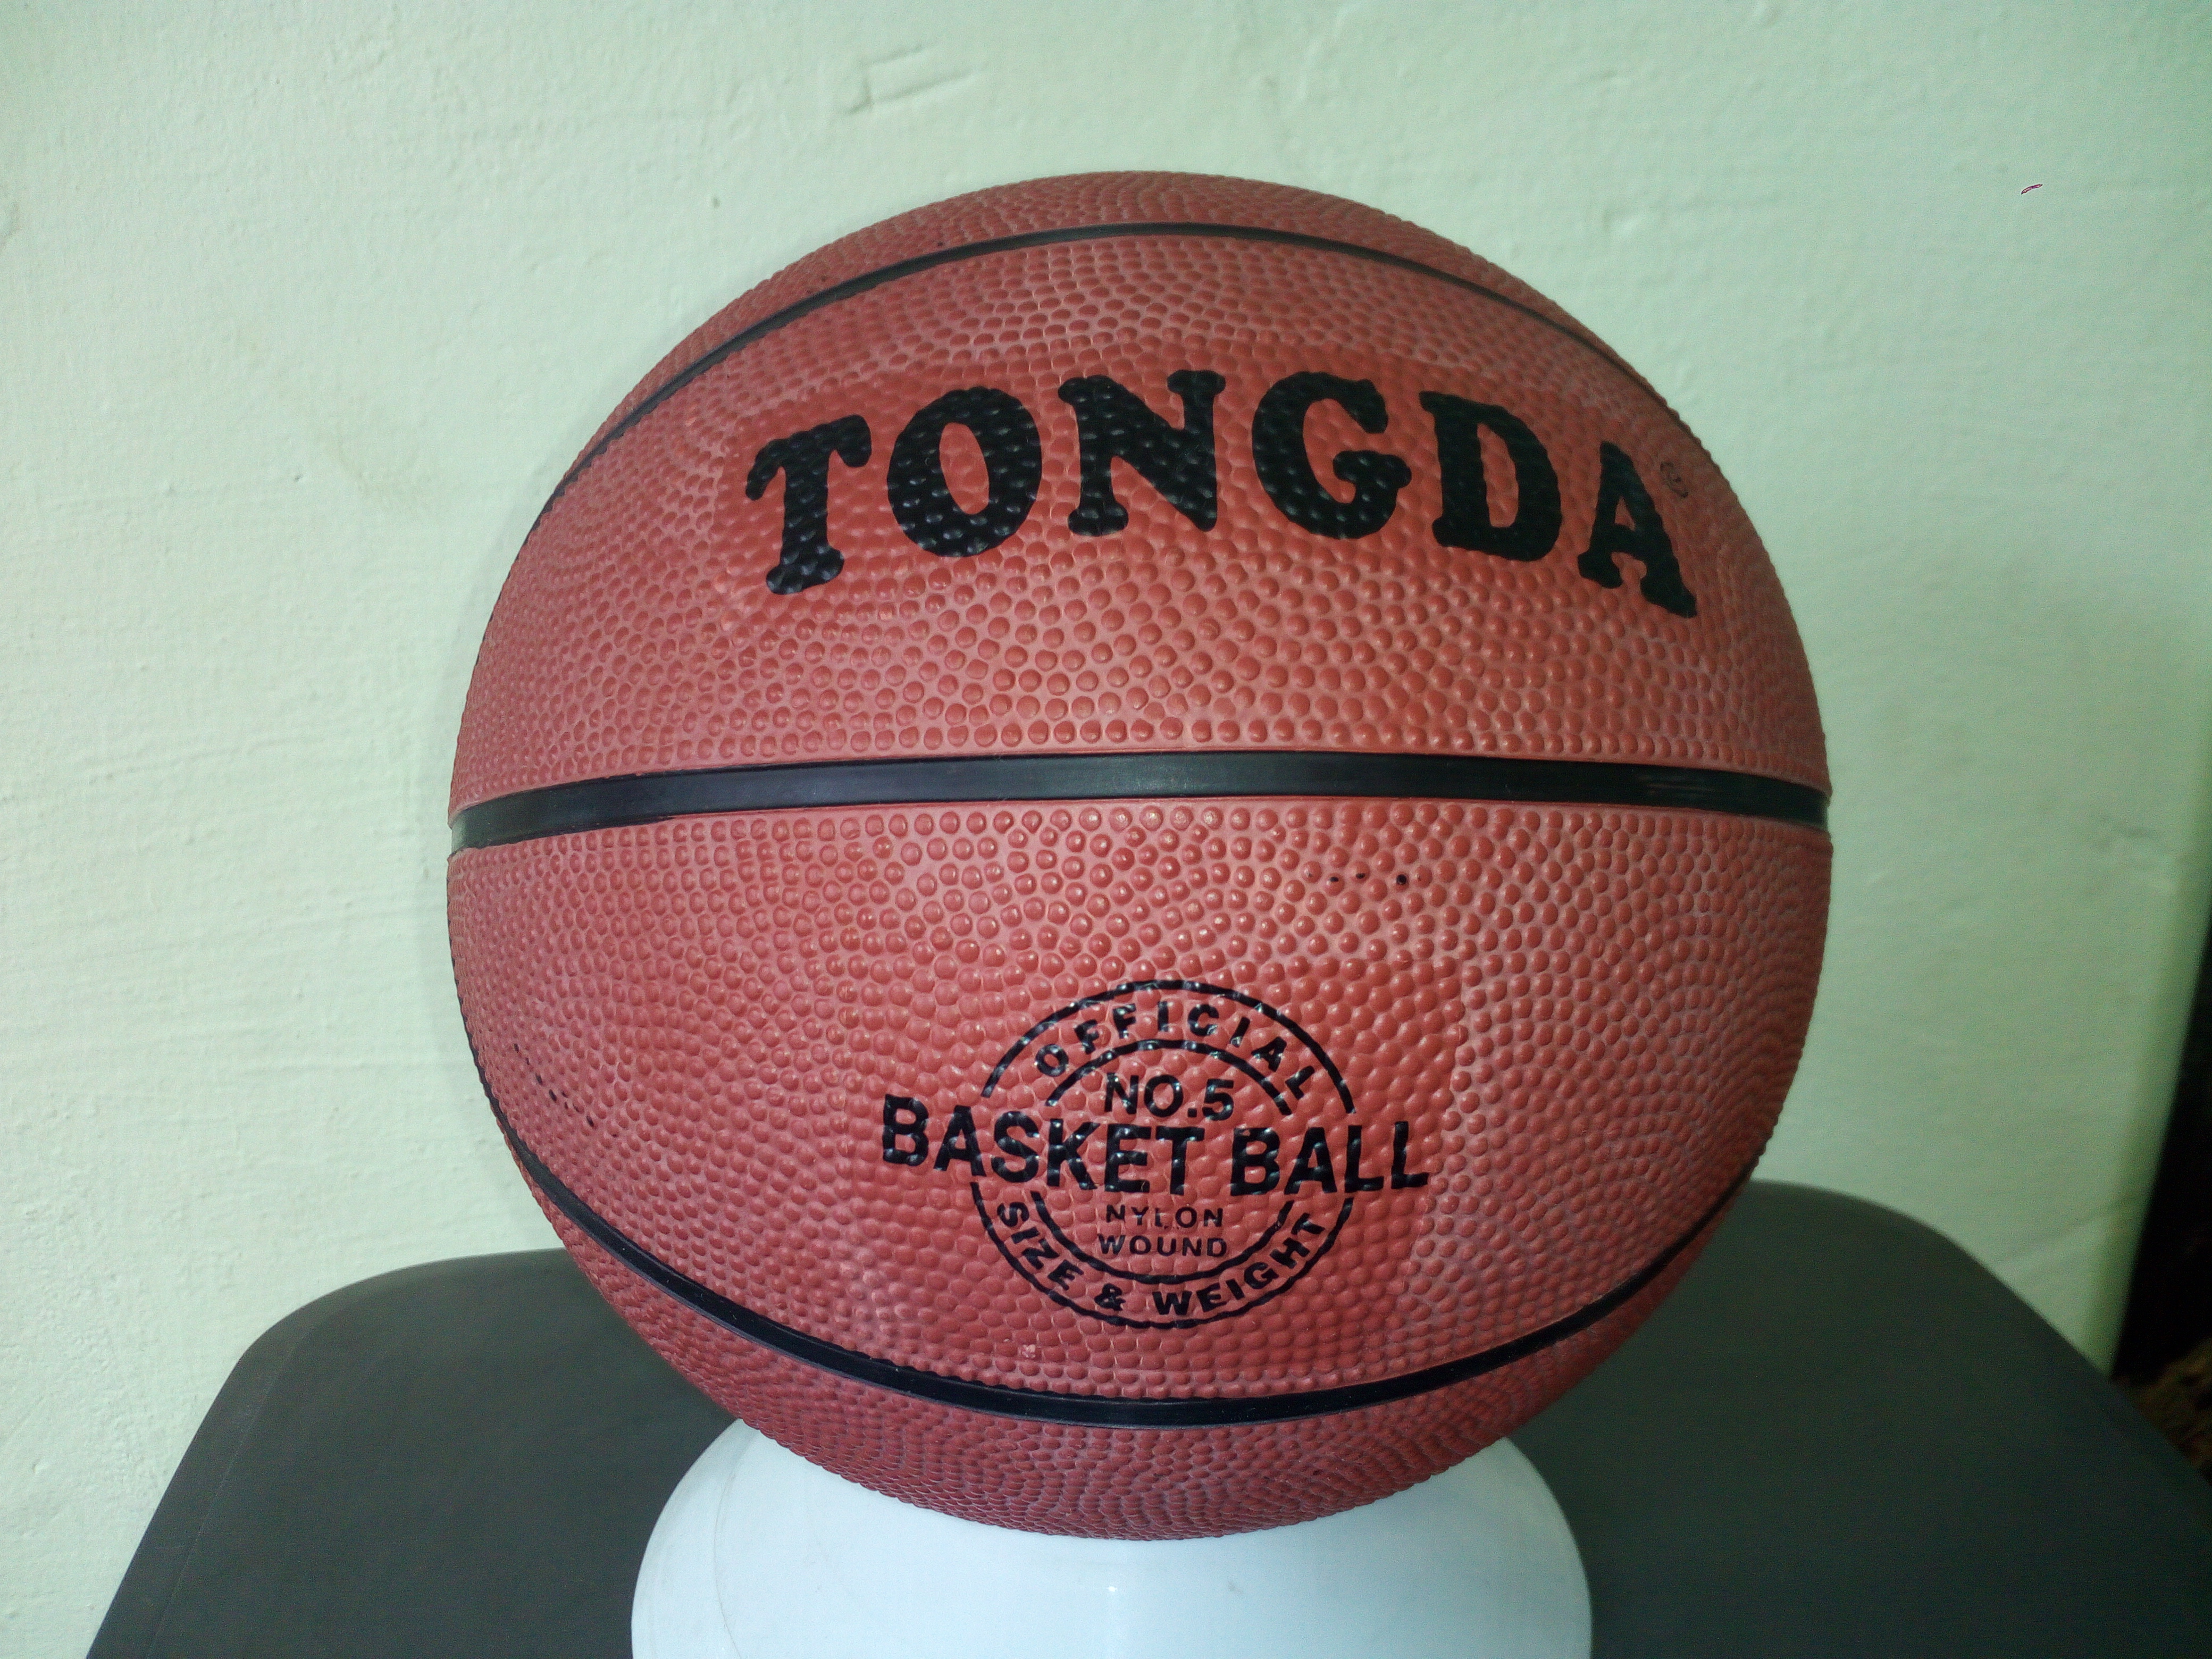 Мяч баскетбольный Tongoa  оранж. №5